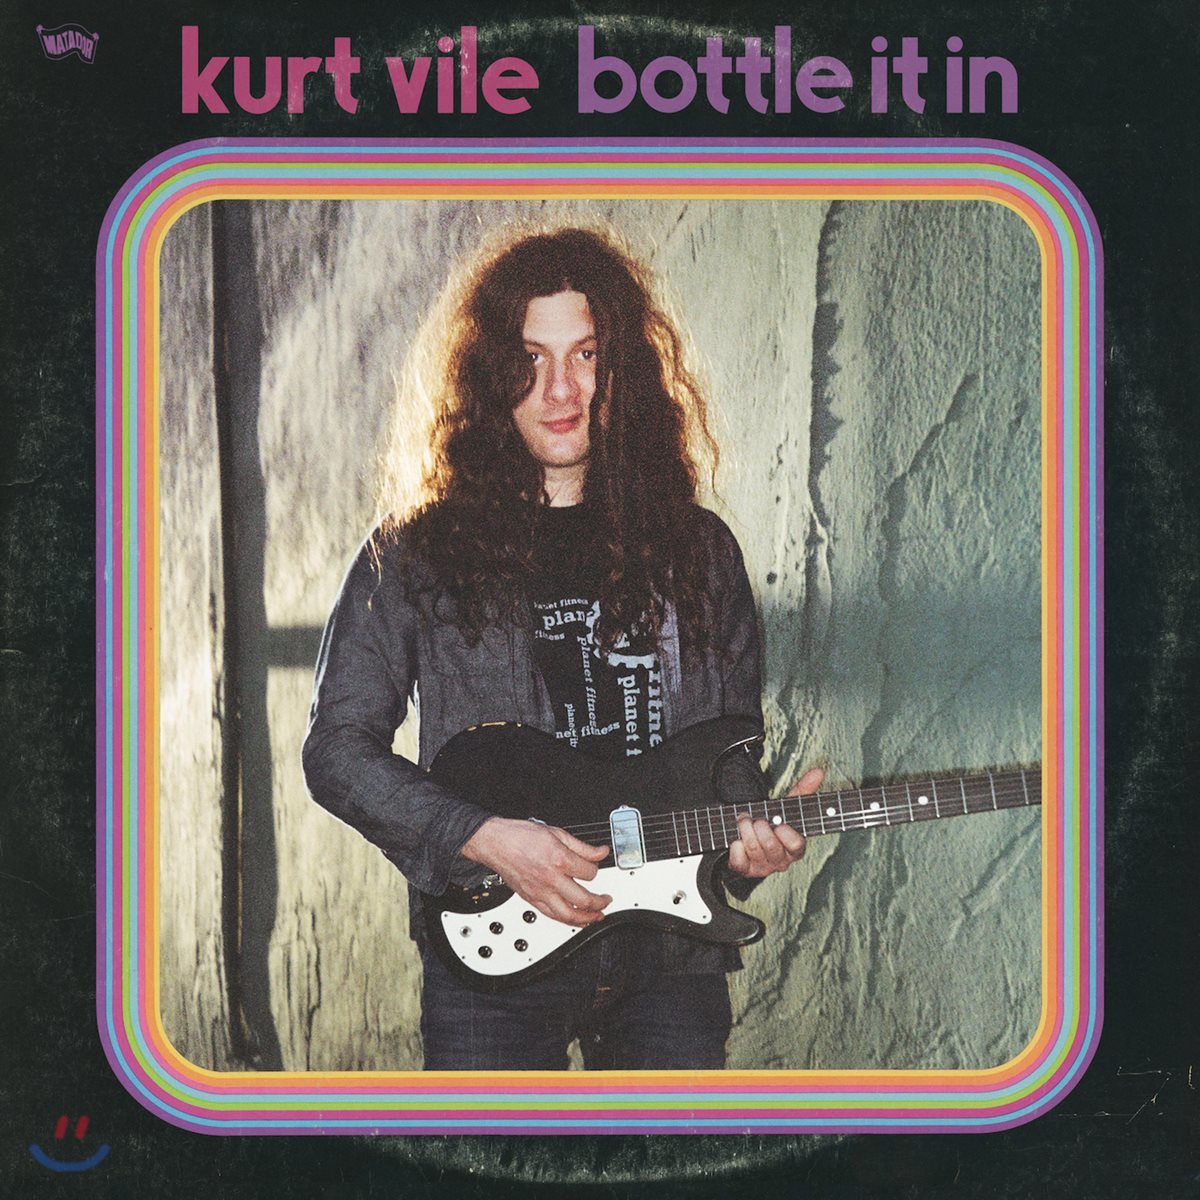 Kurt Vile (커트 바일) - Bottle It In 